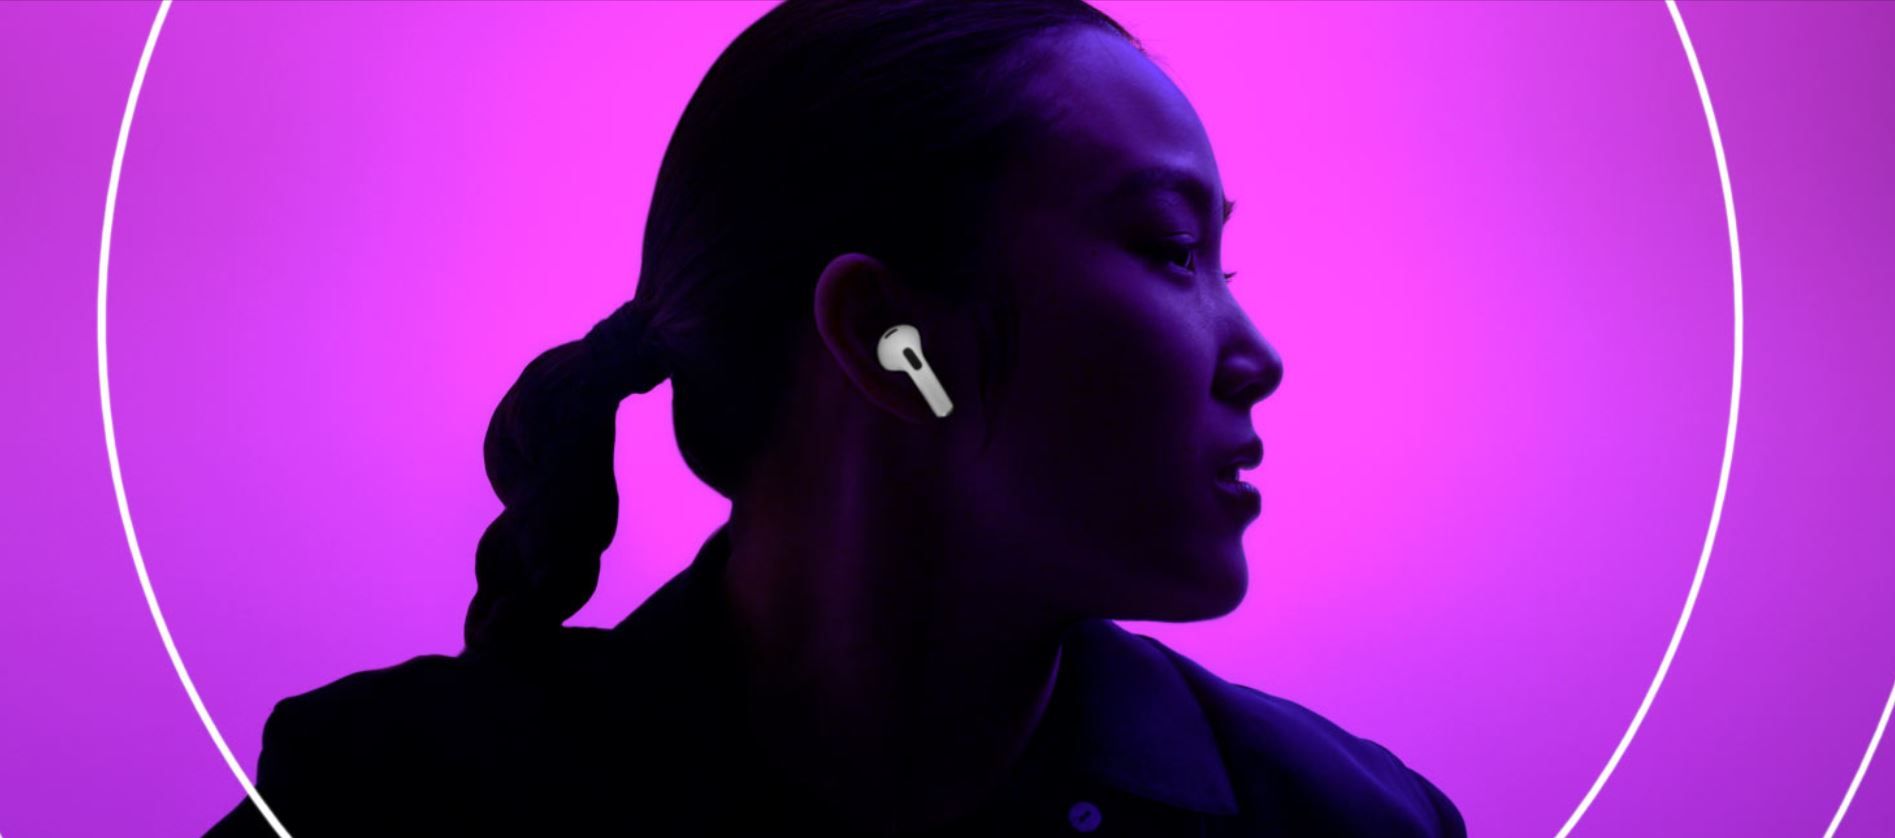  Moderne slušalice imaju Bluetooth vezu i automatsko uparivanje s Apple uređajima, upravljanje dodirom, otpornost na vodu i znoj, prekrasan zvuk 